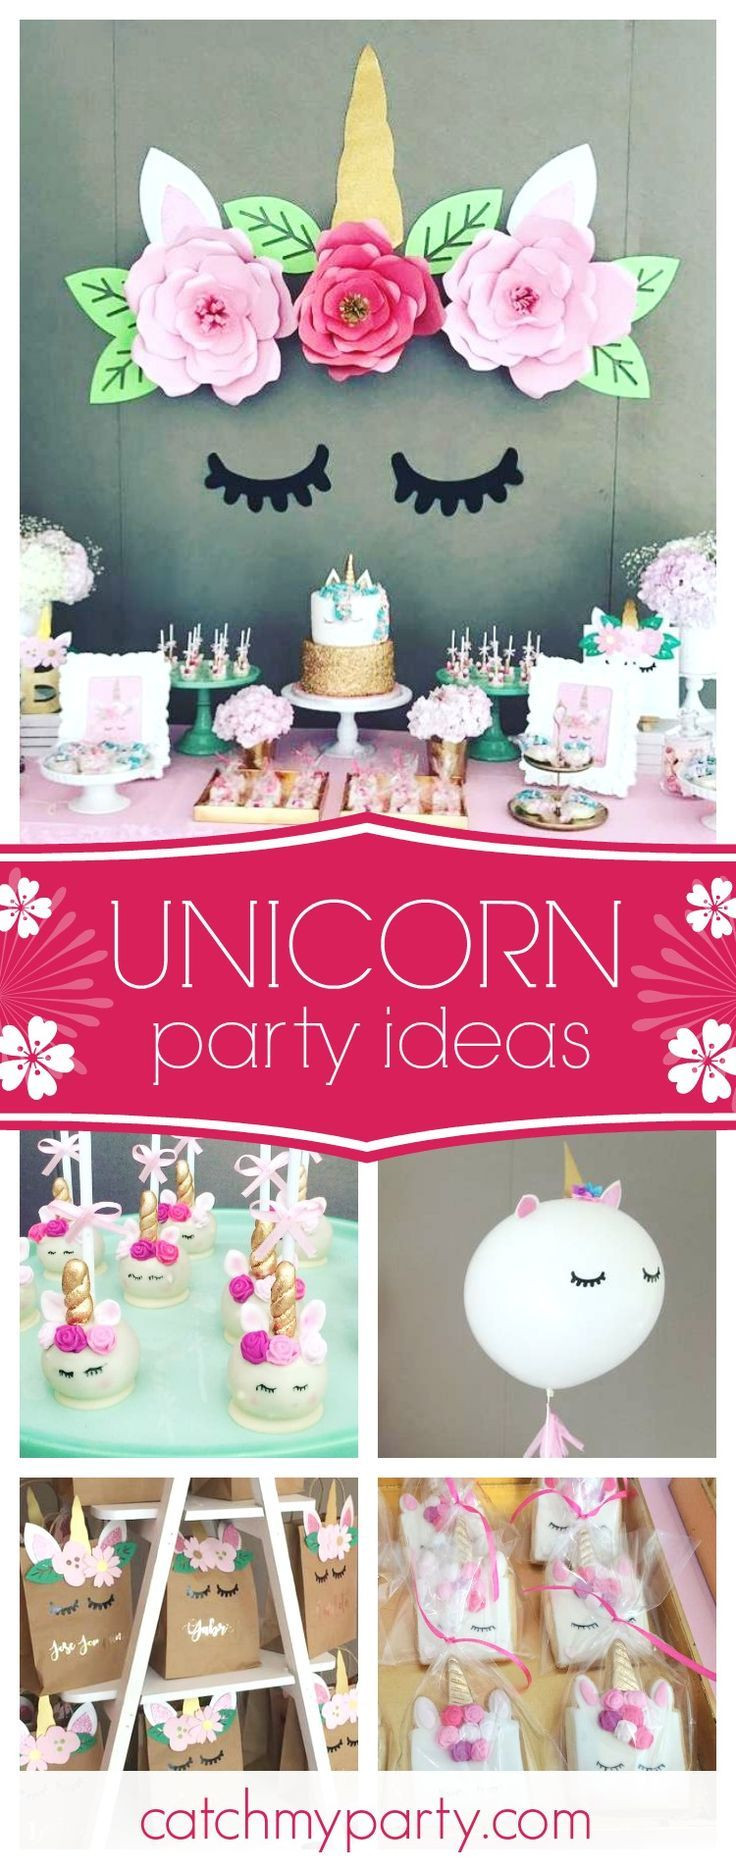 Coolest Unicorn Party Ideas
 Best 25 Unicorn birthday parties ideas on Pinterest